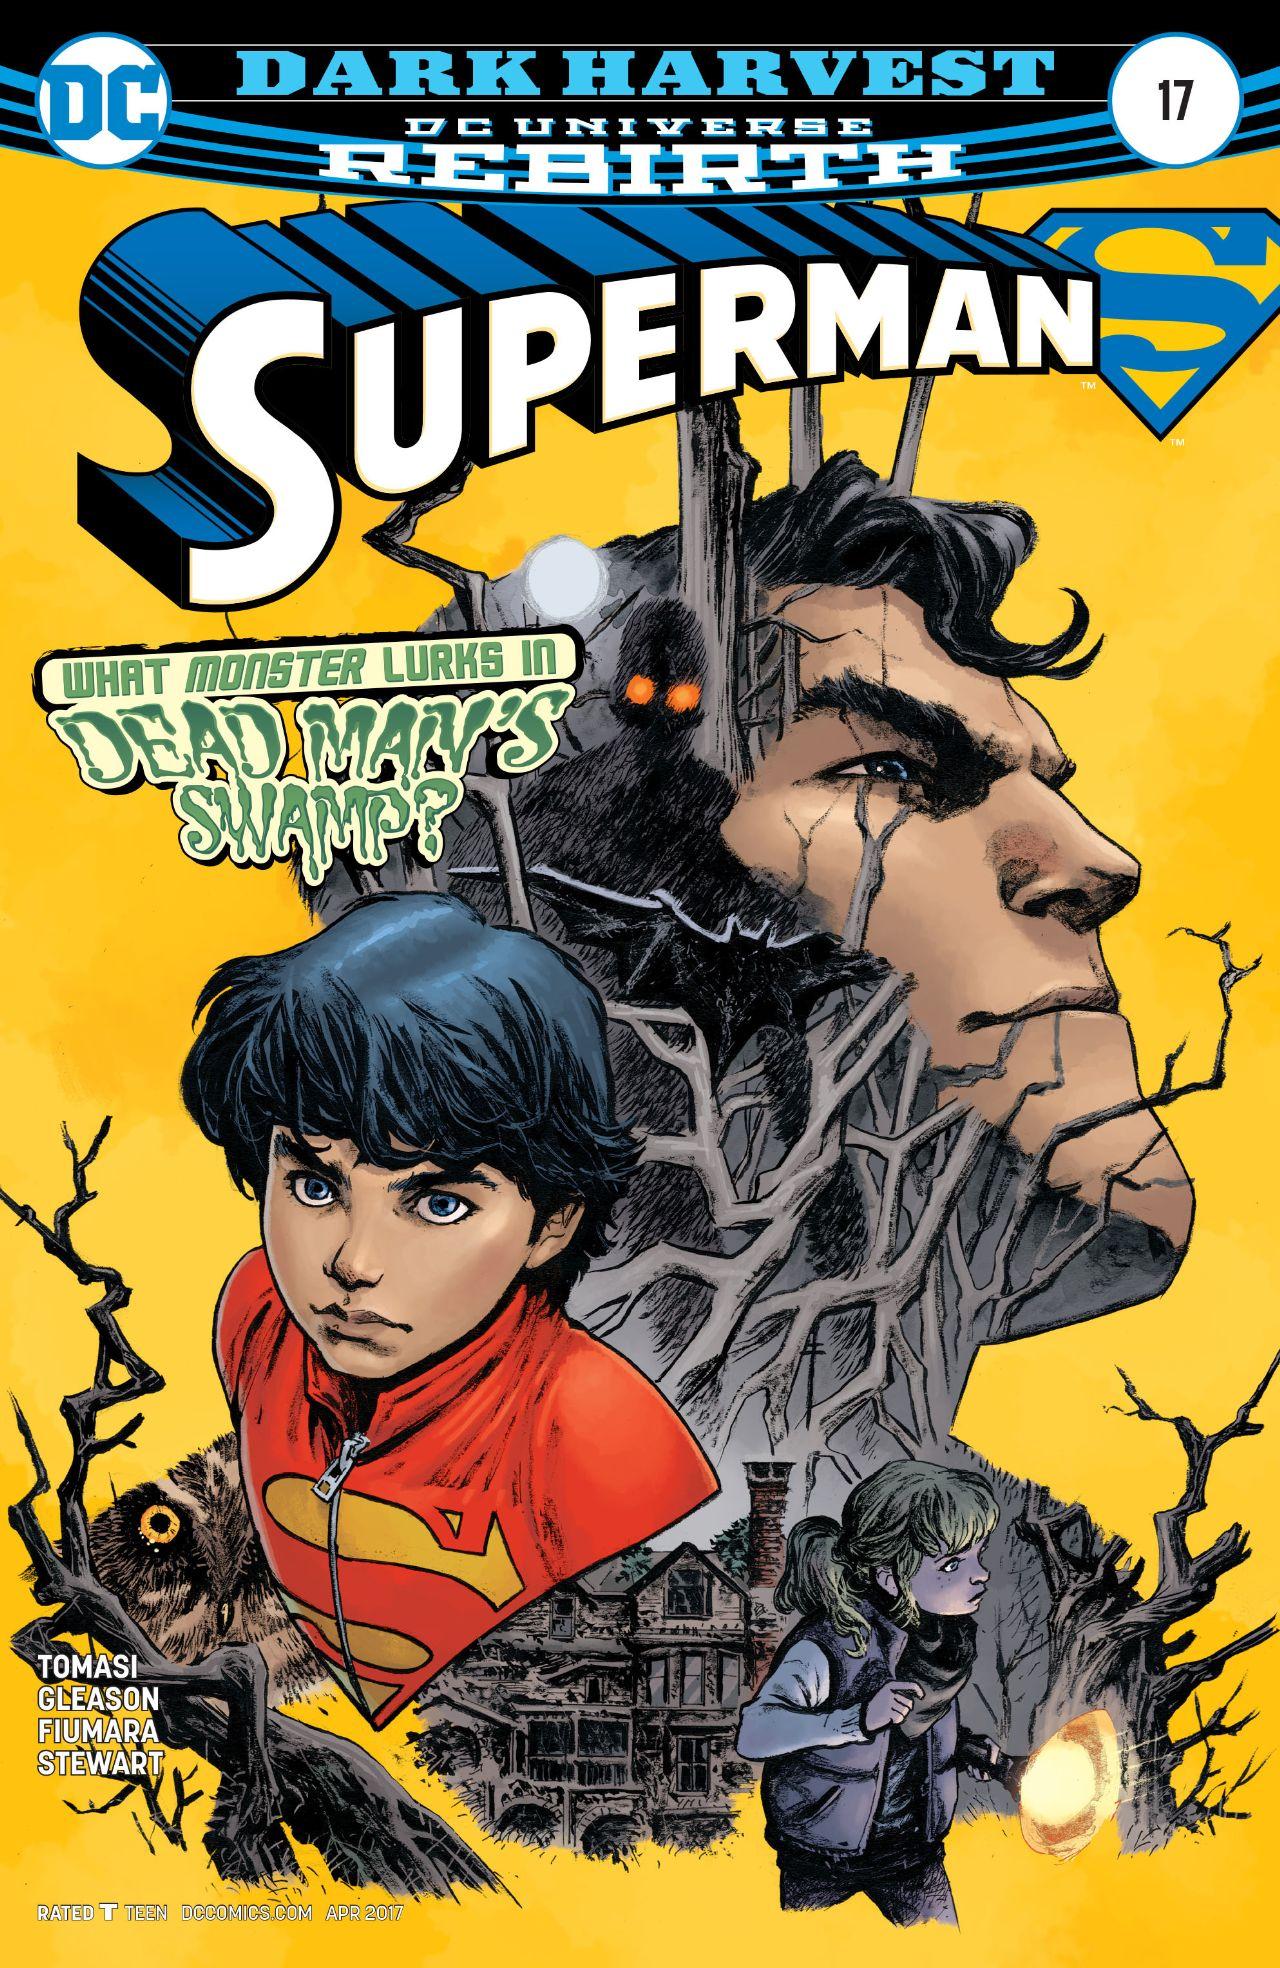 Superman Vol. 4 #17